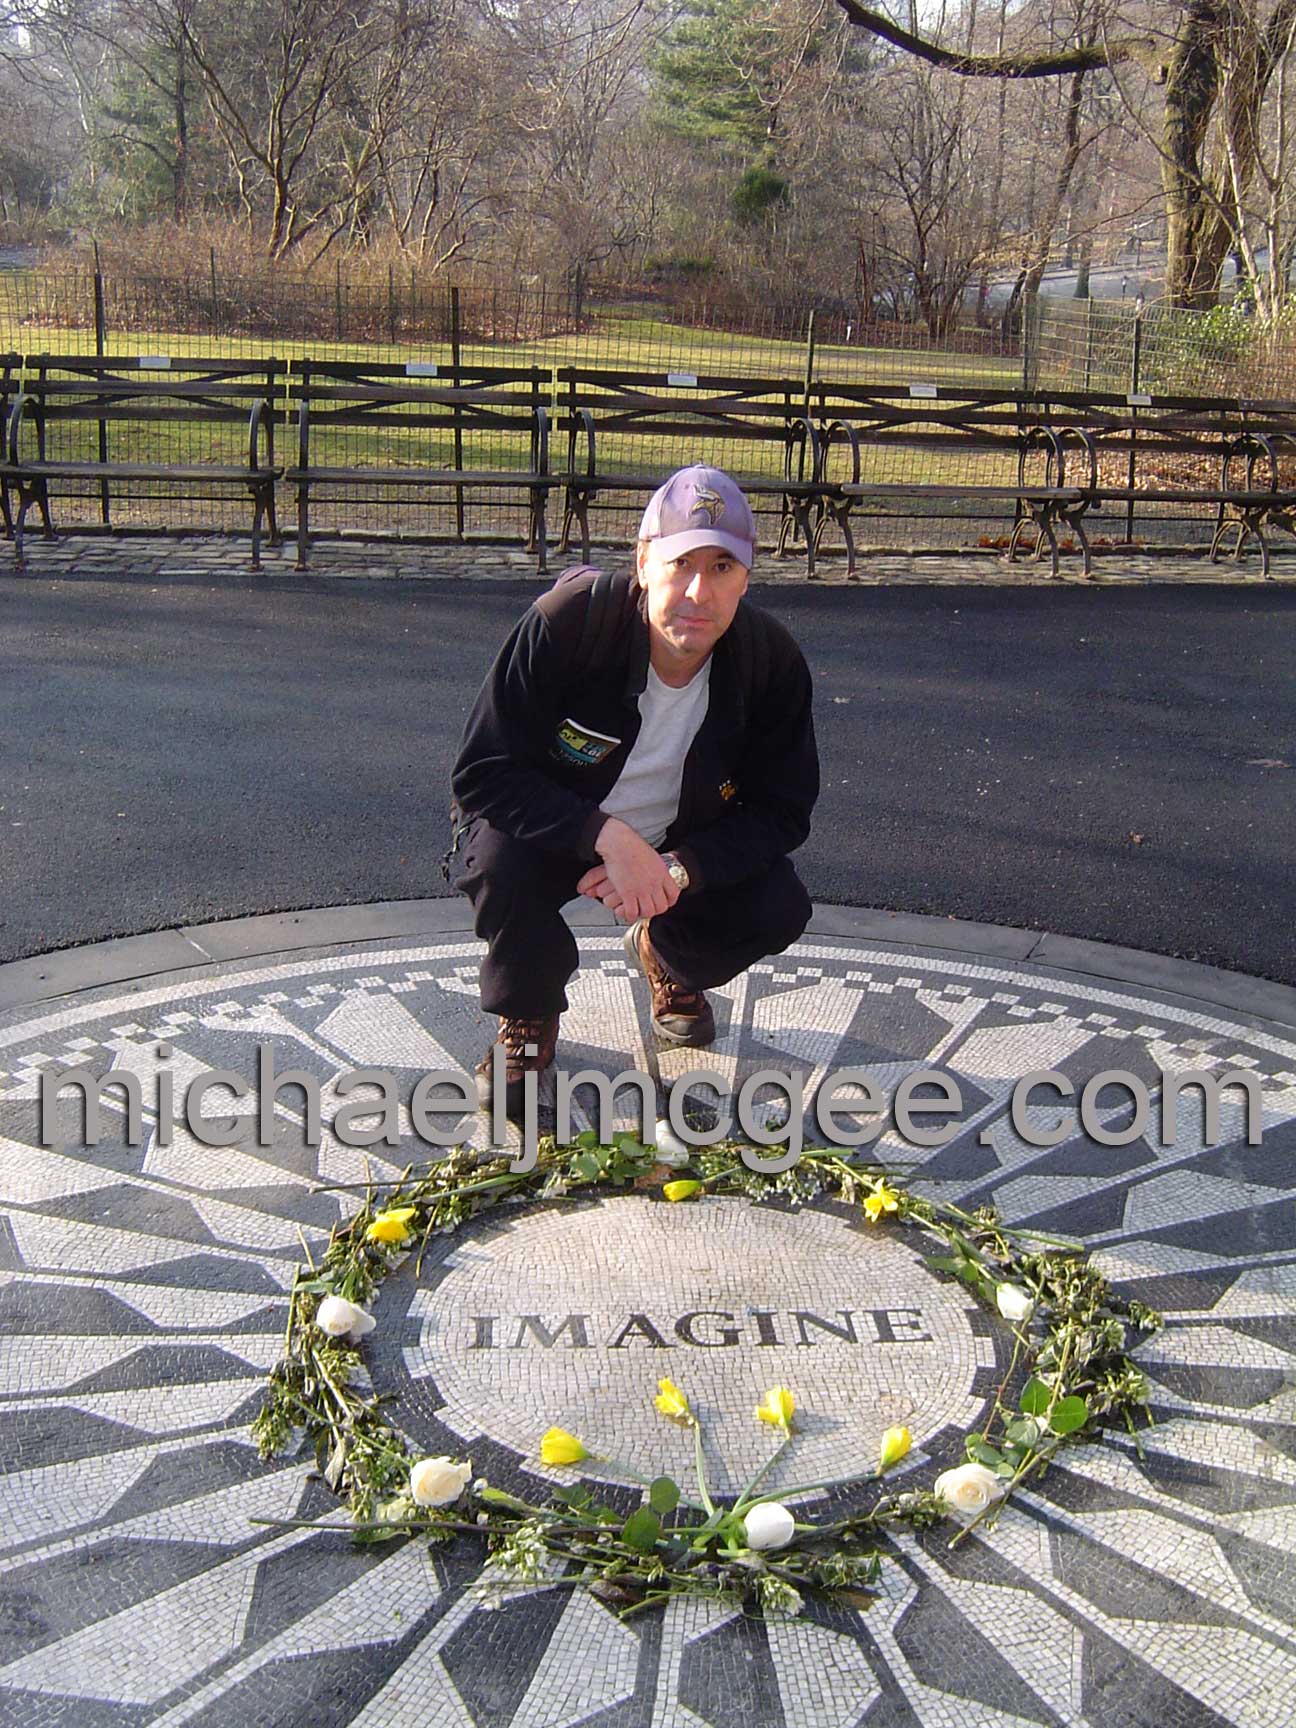 John Lennon / michaeljmcgee.com